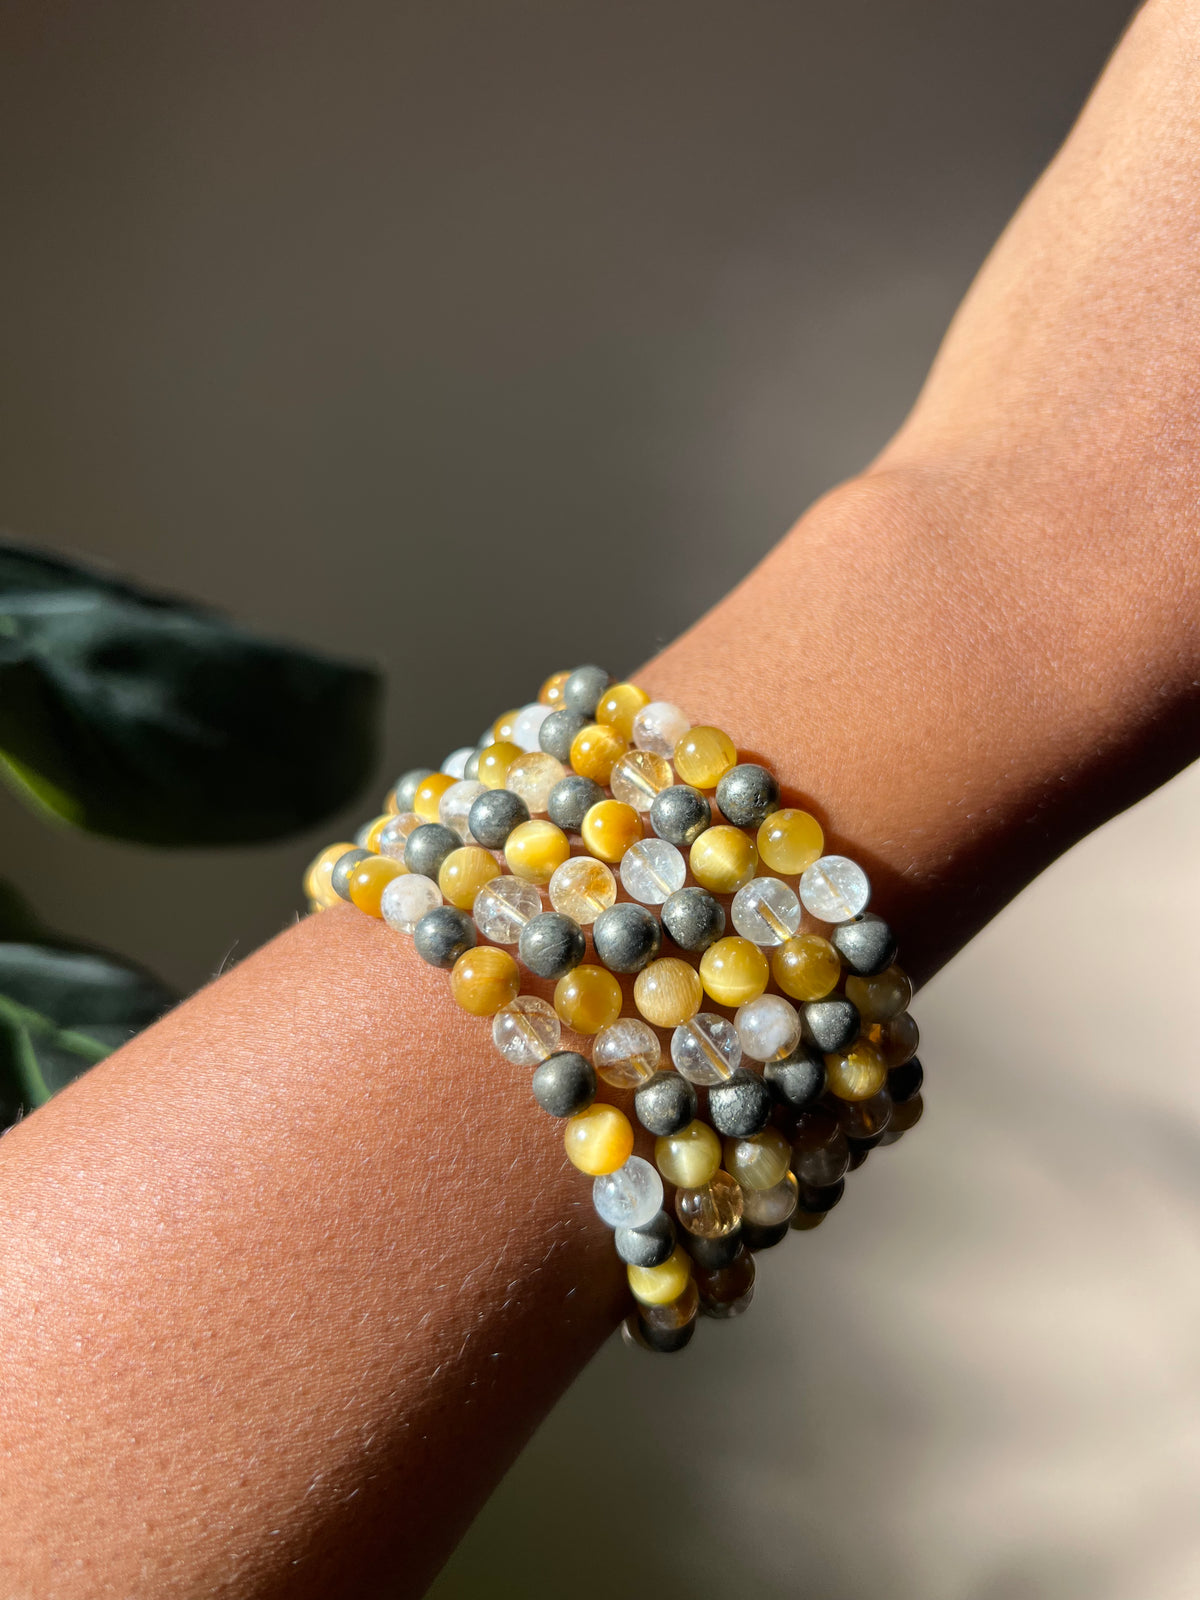 The Solar Plexus Bracelet (Confidence, Self-Esteem, Abundance) - 6mm beads